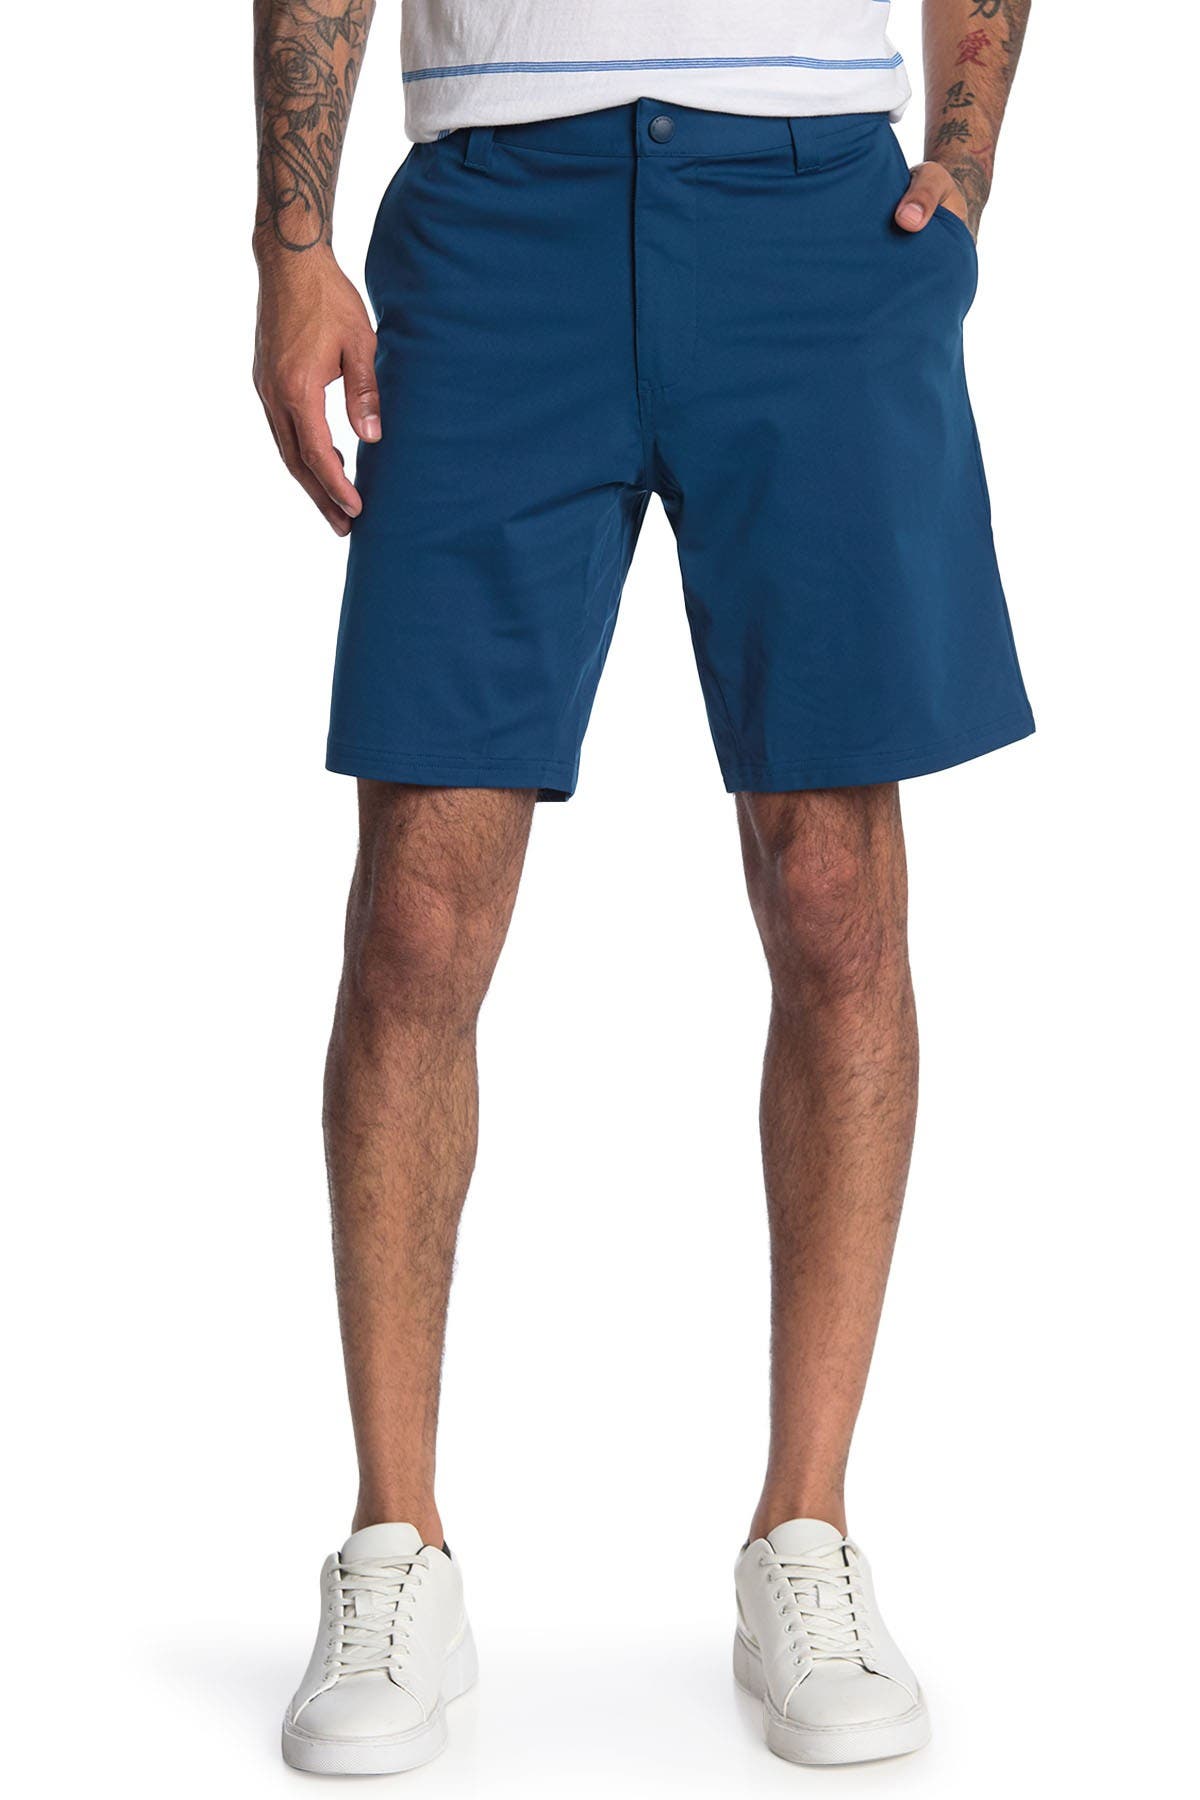 Rhone Commuter Shorts In Turquoise/aqua3